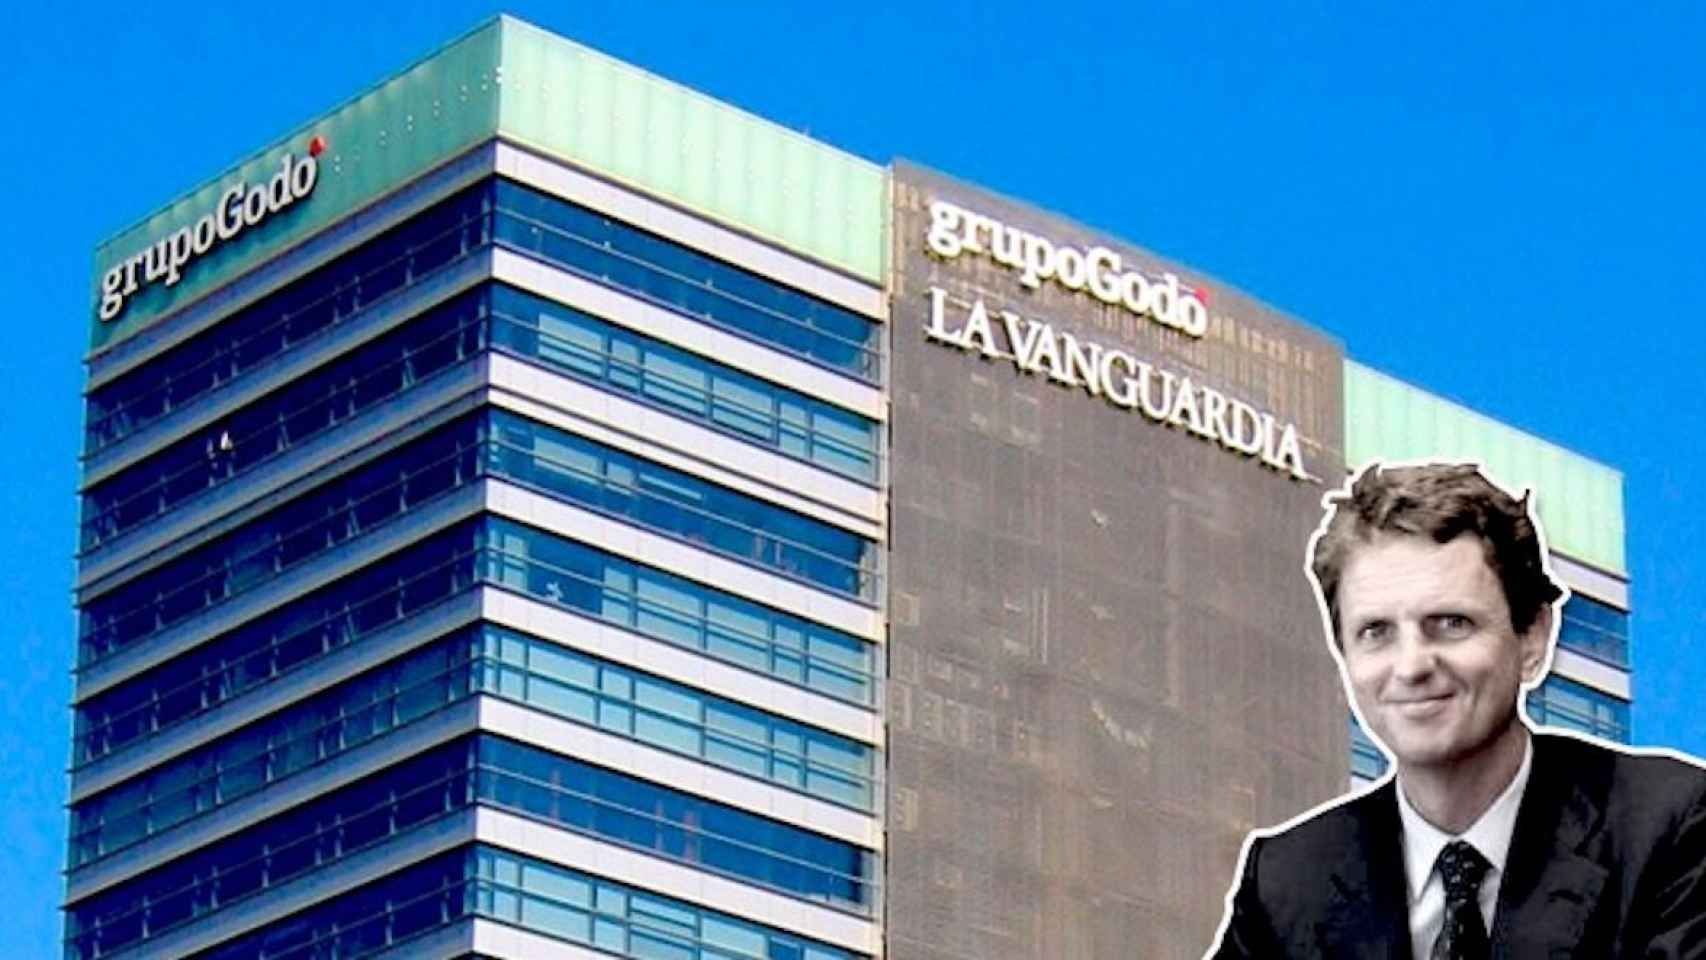 Carlos Godó, CEO del Grupo Godó, y una imagen de la torre donde se encuentra la sede de la empresa